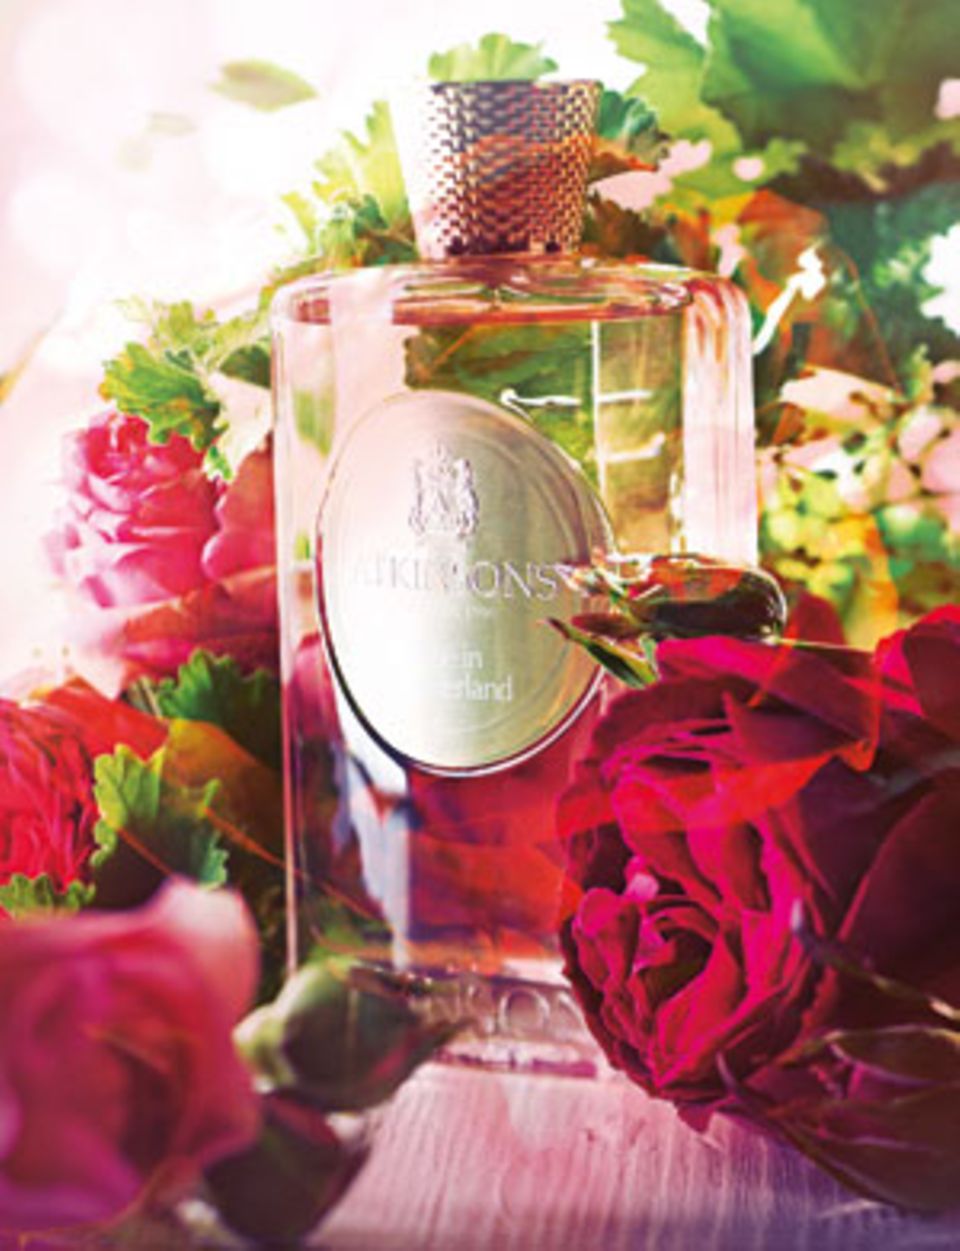 "Rose in Wonderland" von Atkinsons, Eau de Parfum, 100 ml ca. 130 Euro